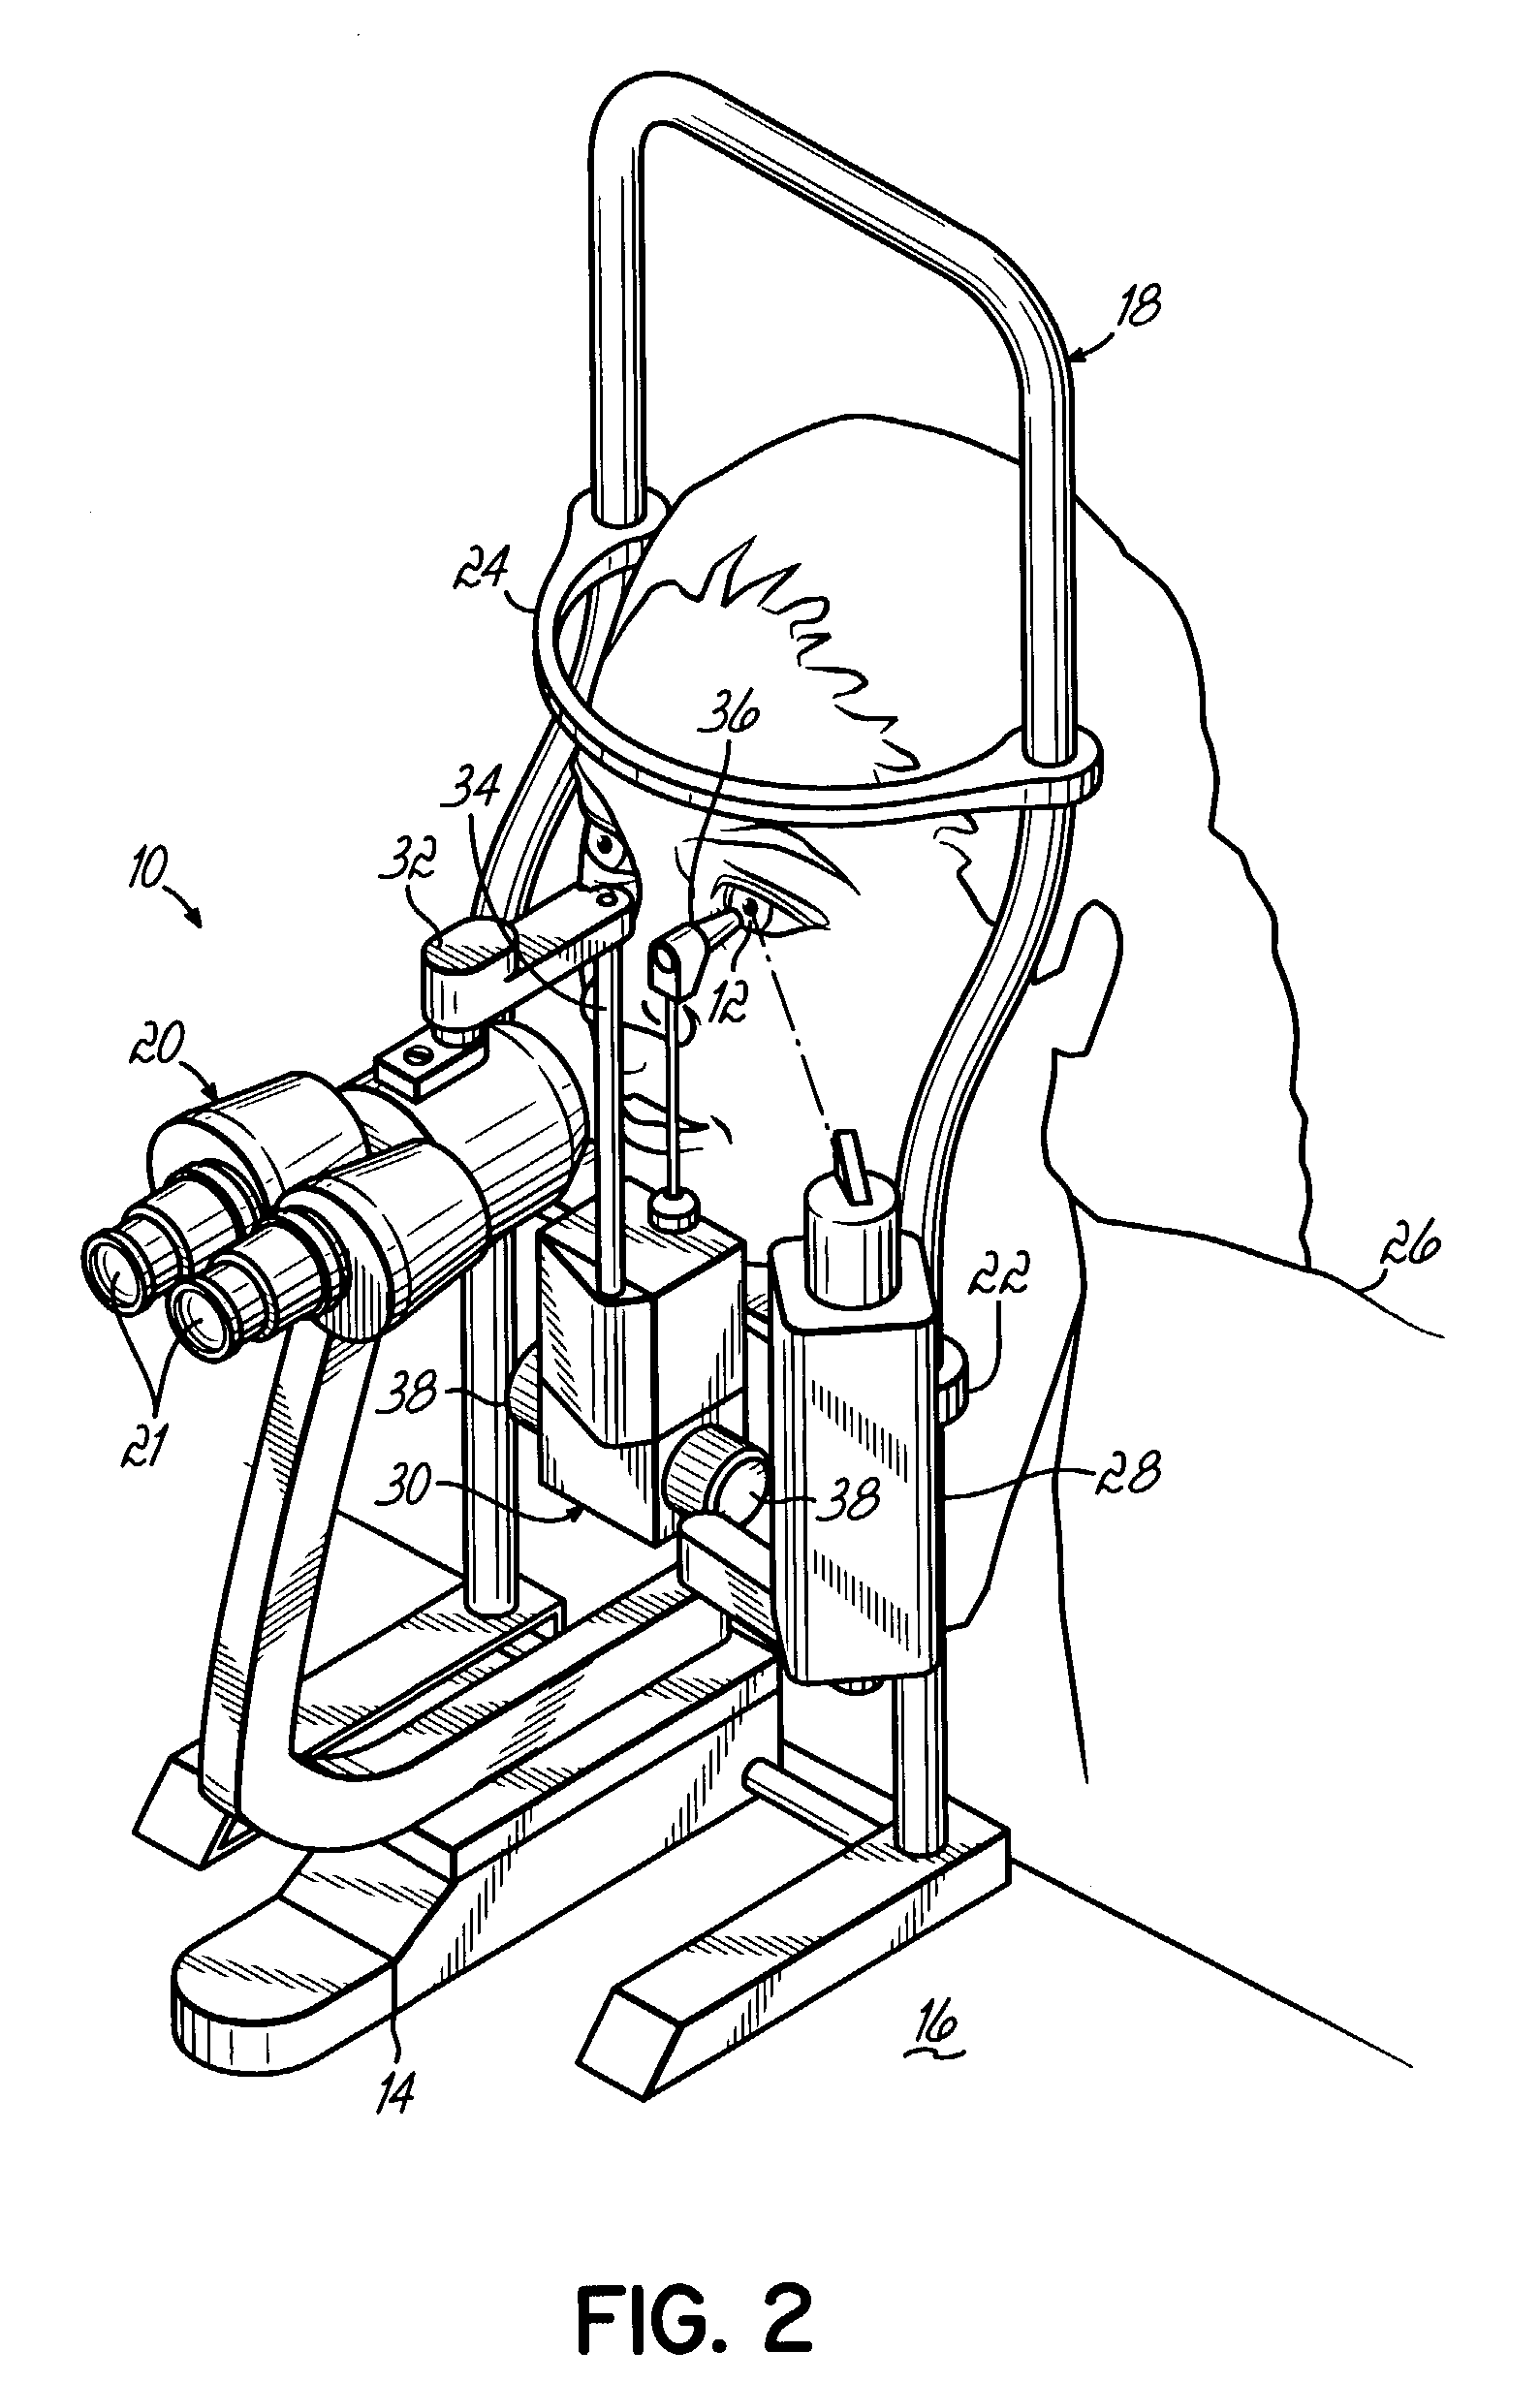 Load sensing applanation tonometer